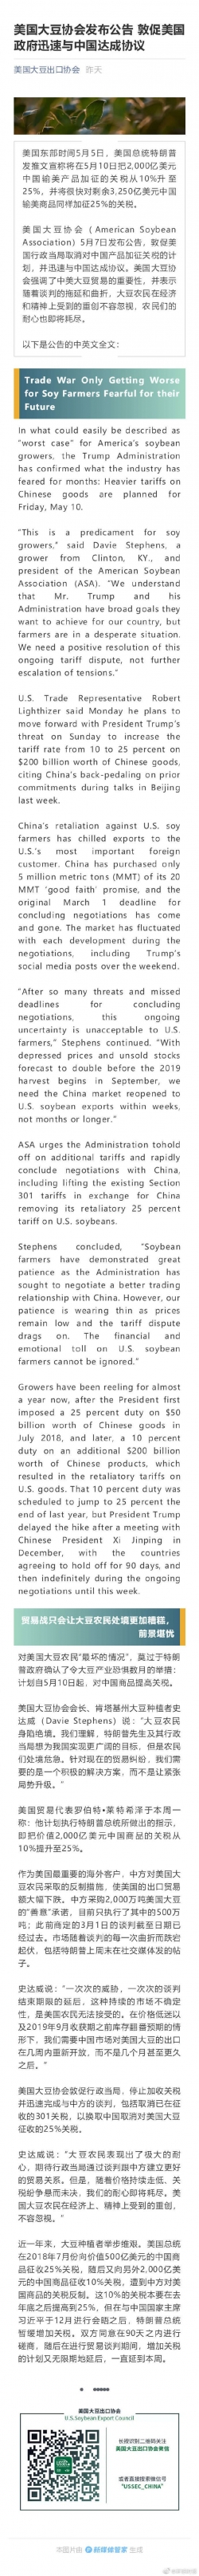 美国大豆协会发布公告 敦促美政府迅速与中国达成协议